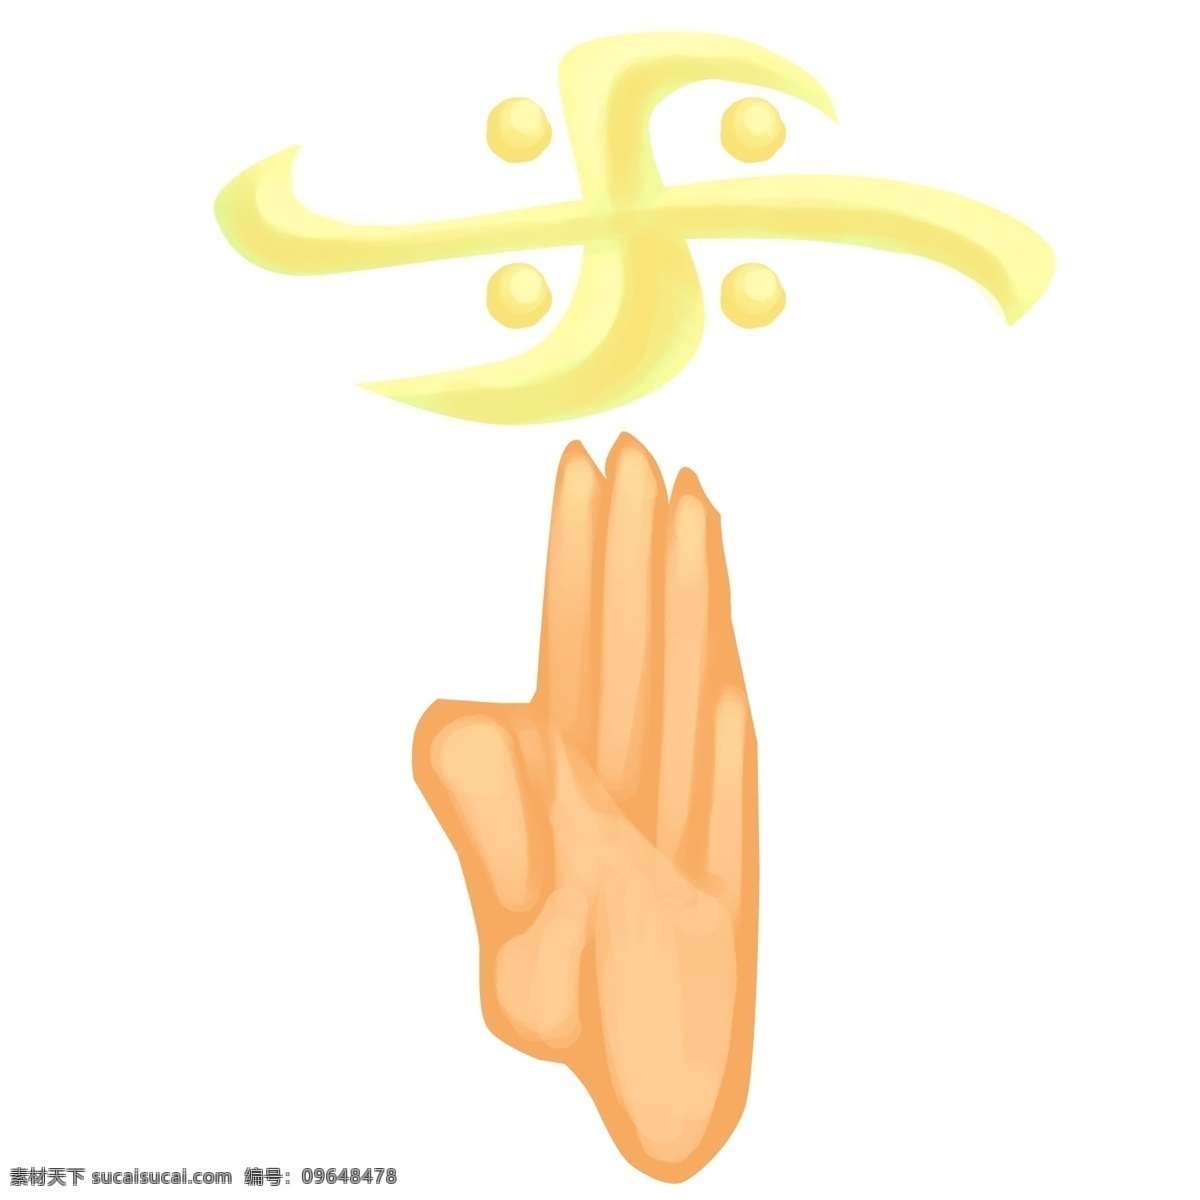 卡通 黄色 图案 插图 旋转图案 黄色图案 对称图案 装饰设计 黄色圆点 立体手势 弥陀佛手势 念经手势